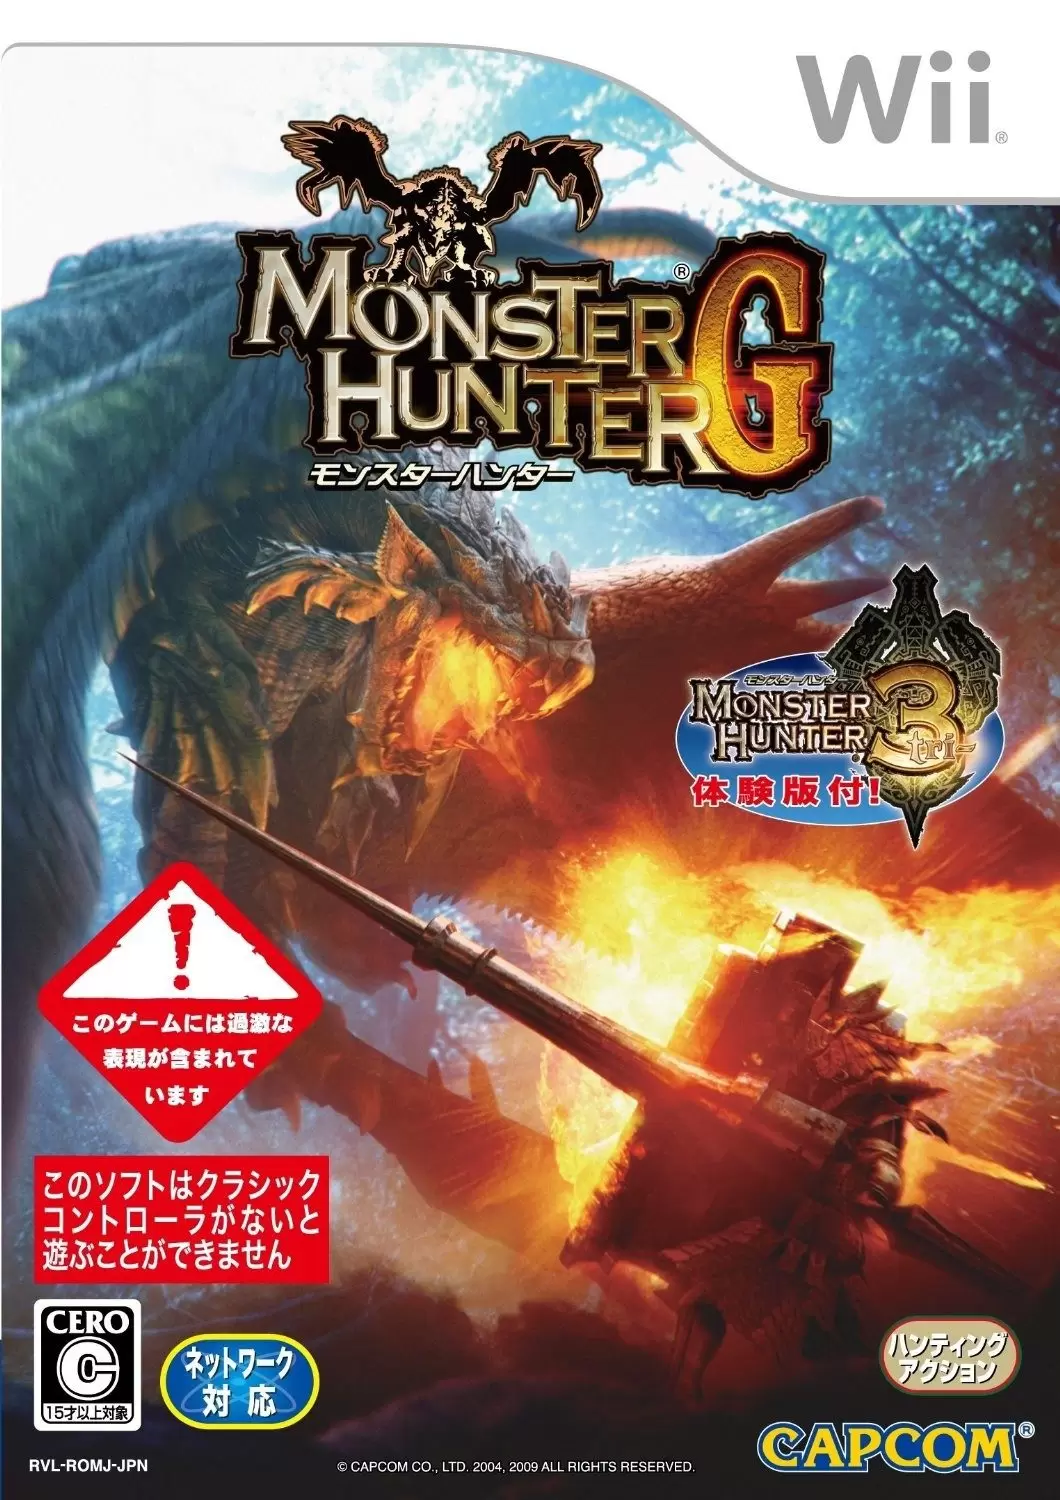 Nintendo Wii Games - Monster Hunter G